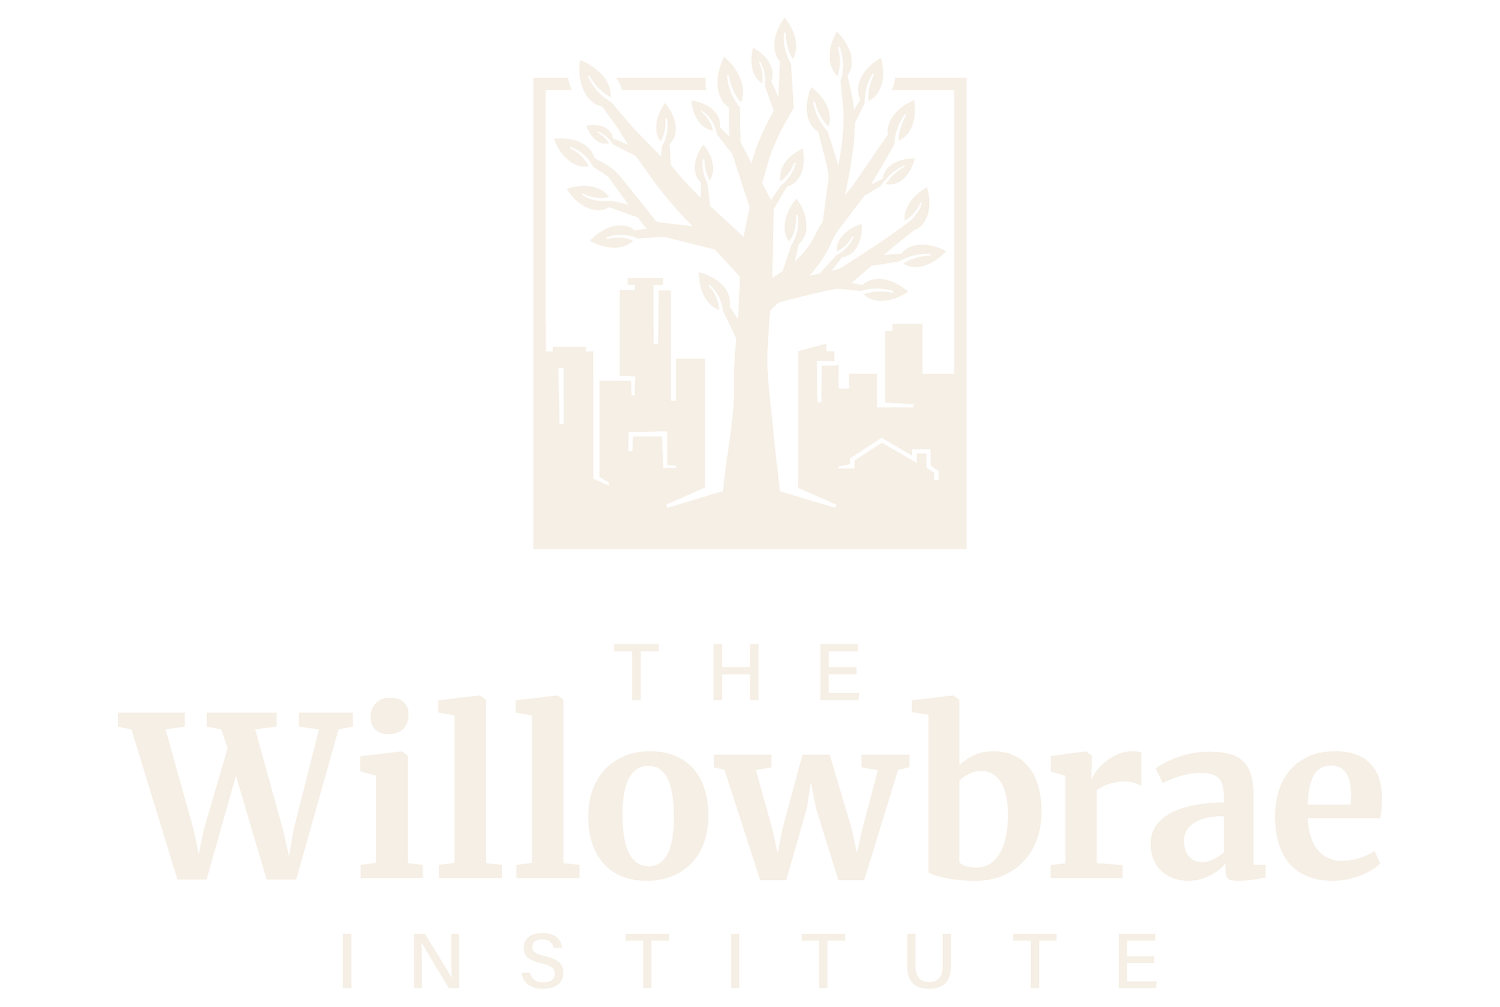 The Willowbrae Institute